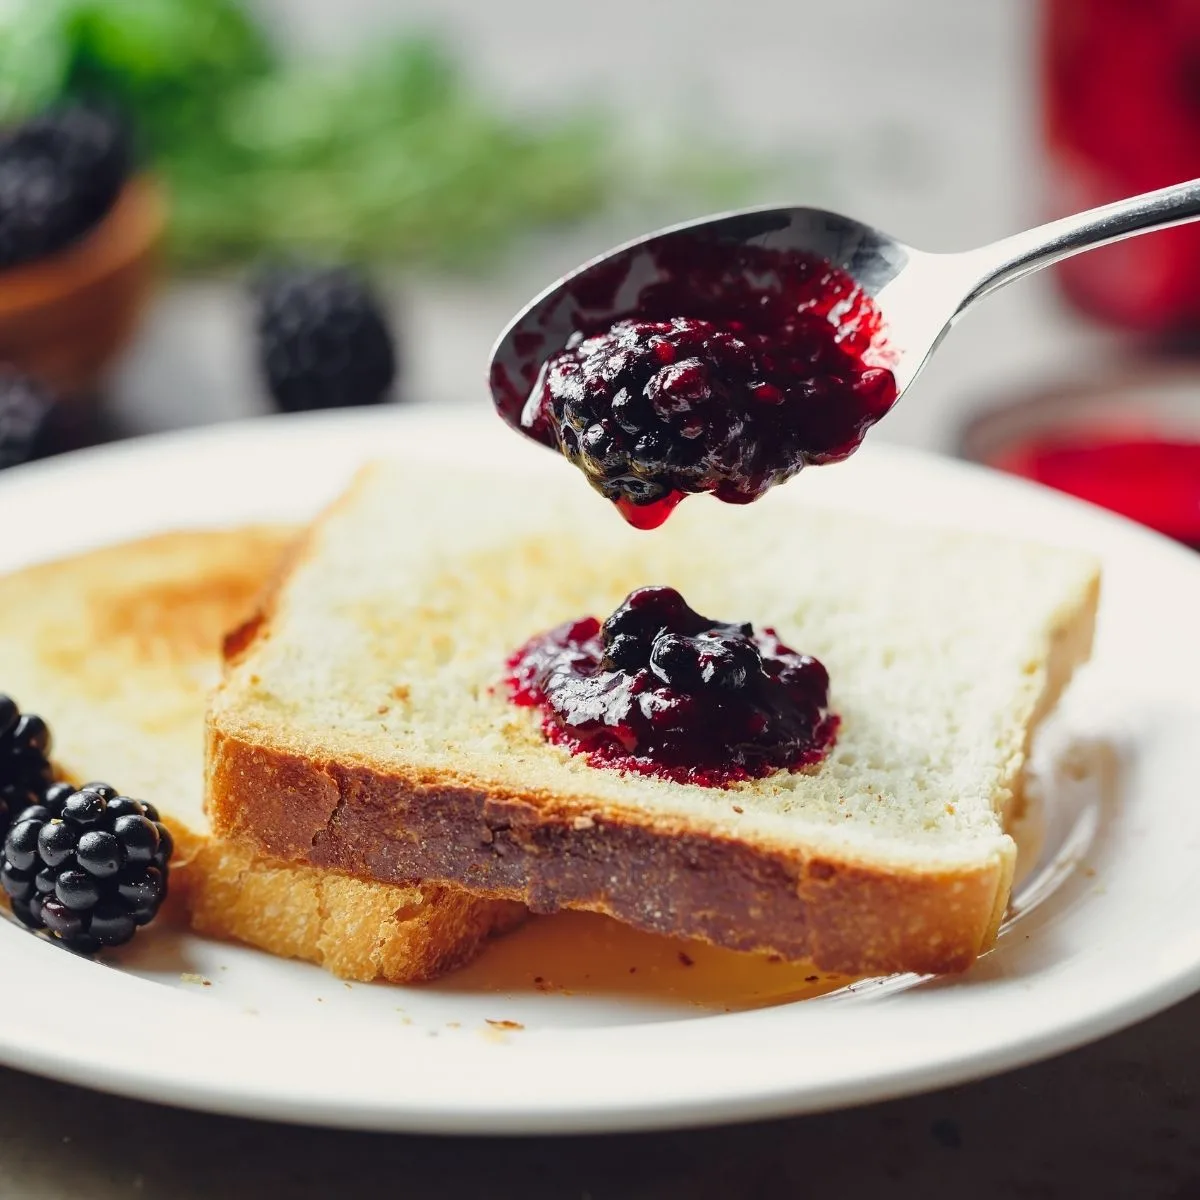 Spooning blackberry jam on toast.